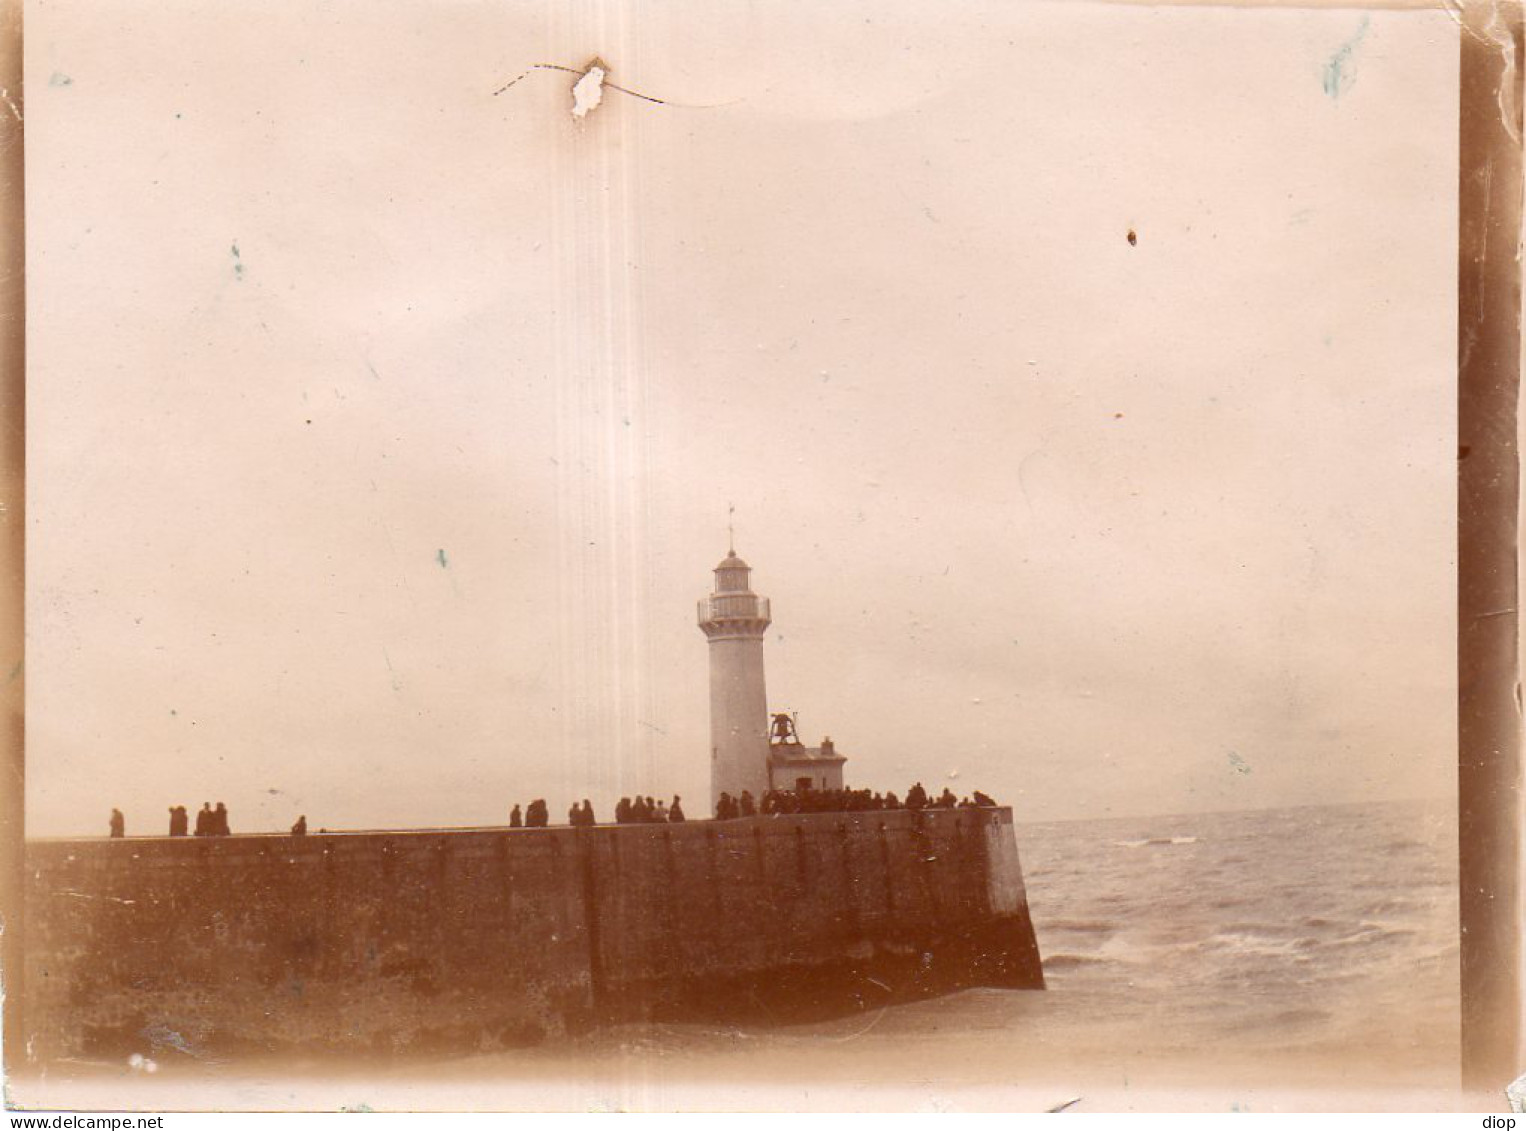 Photo Vintage Paris Snap Shop -mer Sea Phare Lighthouse - Lieux